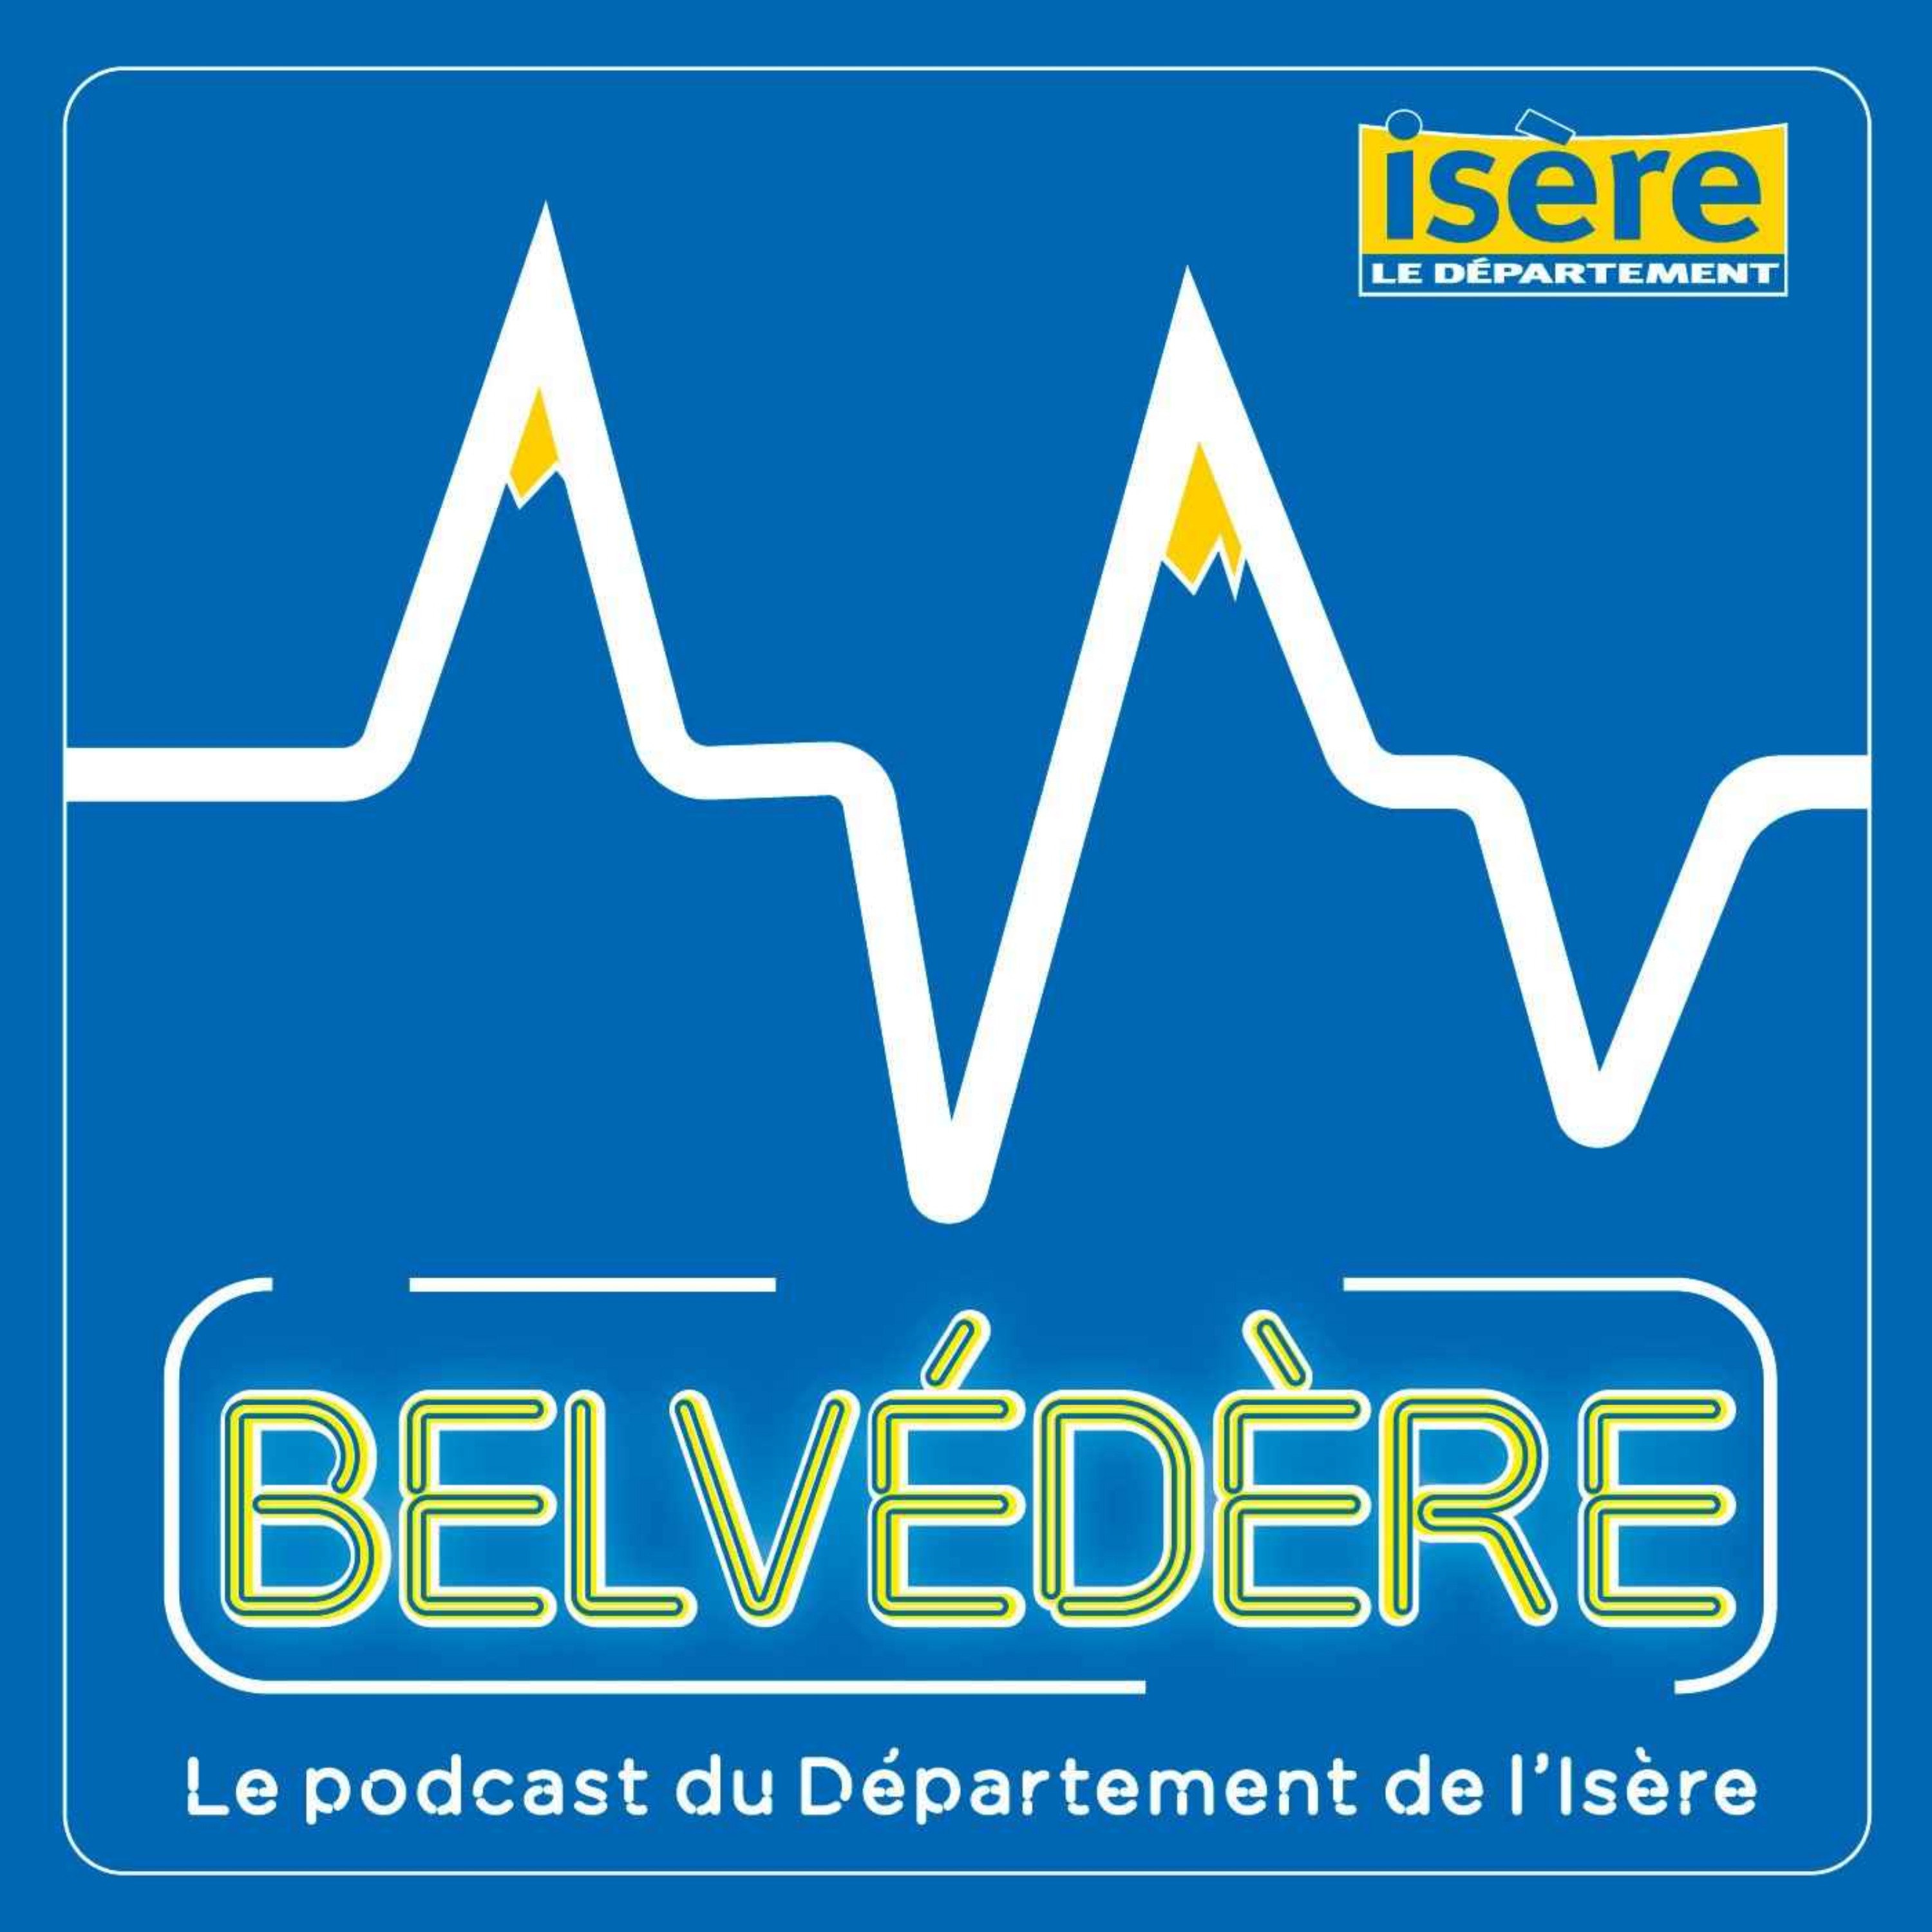 isère département